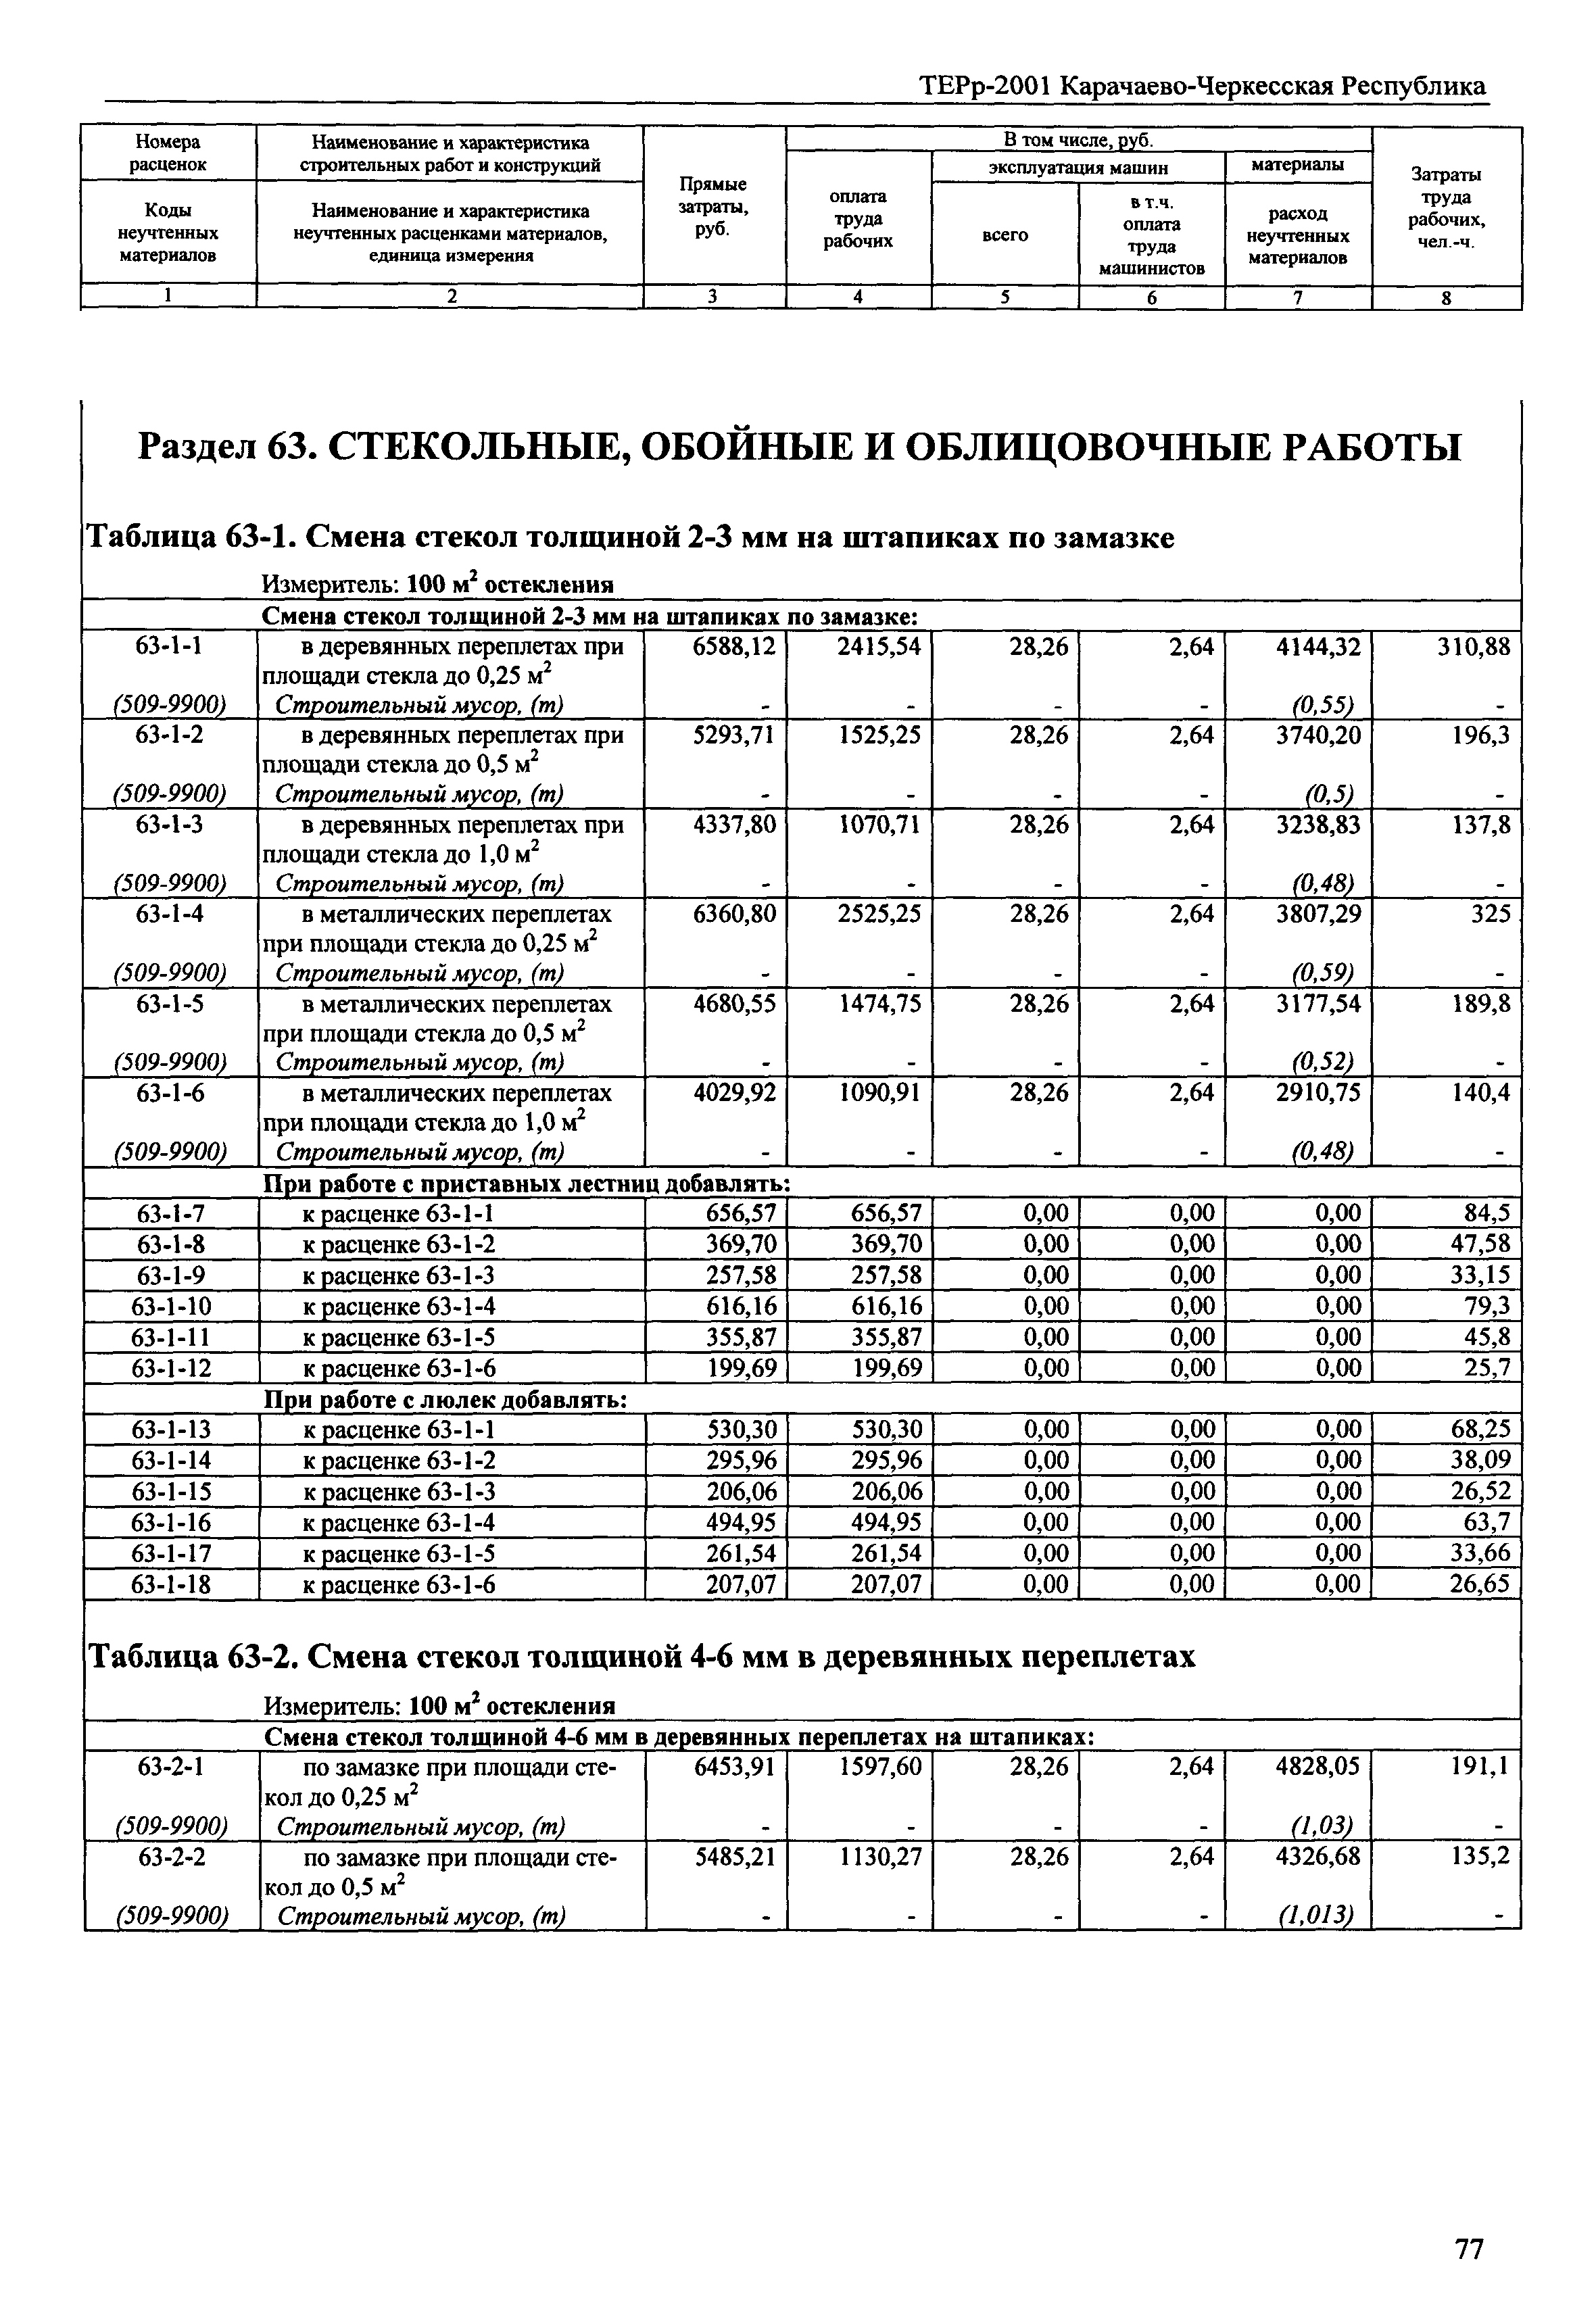 ТЕРр Карачаево-Черкесская Республика 2001-63